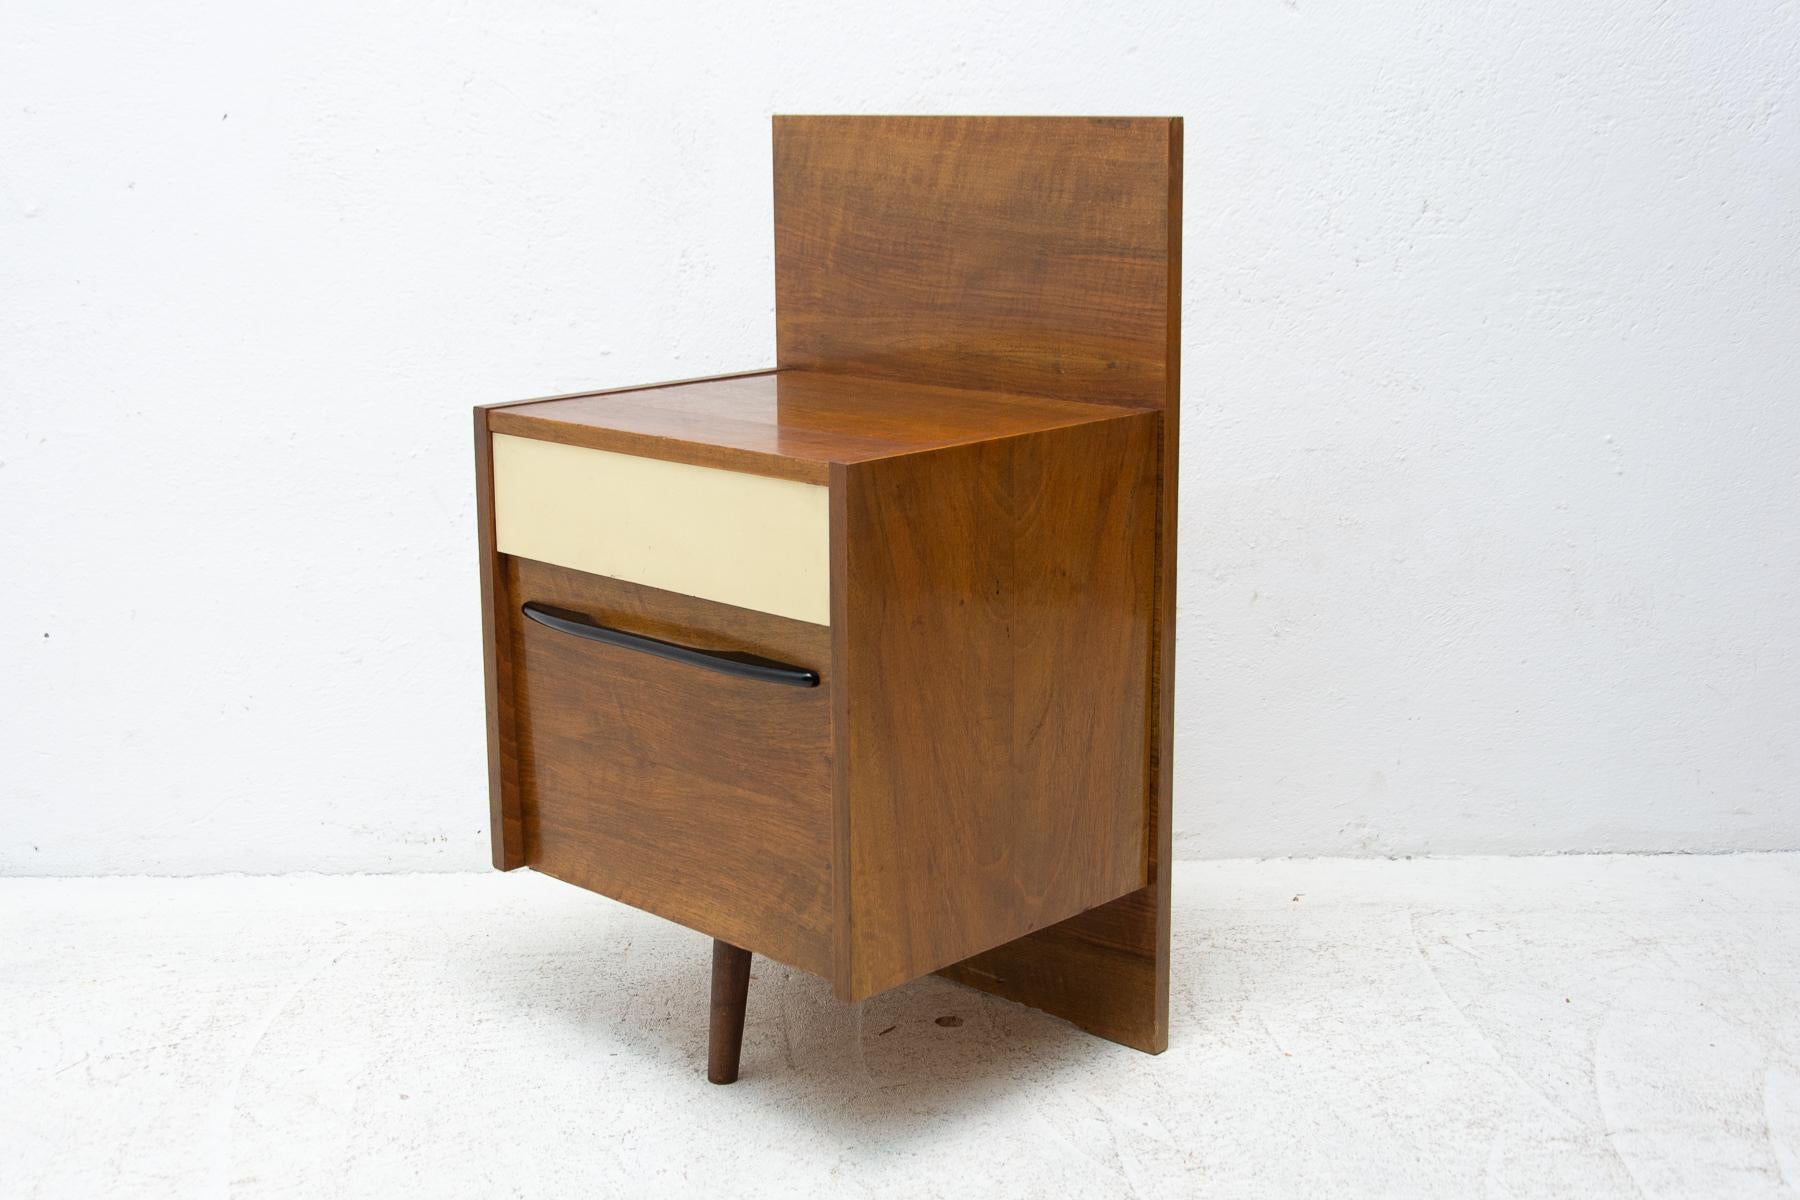 Dieser Nachttisch wurde von Mojmír Požár für UP Závody entworfen und in der ehemaligen Tschechoslowakei in den 1960er Jahren hergestellt. Nussbaum- und Buchenholz.
In gutem Vintage-Zustand, mit leichten Alters- und Gebrauchsspuren.

Höhe: 79